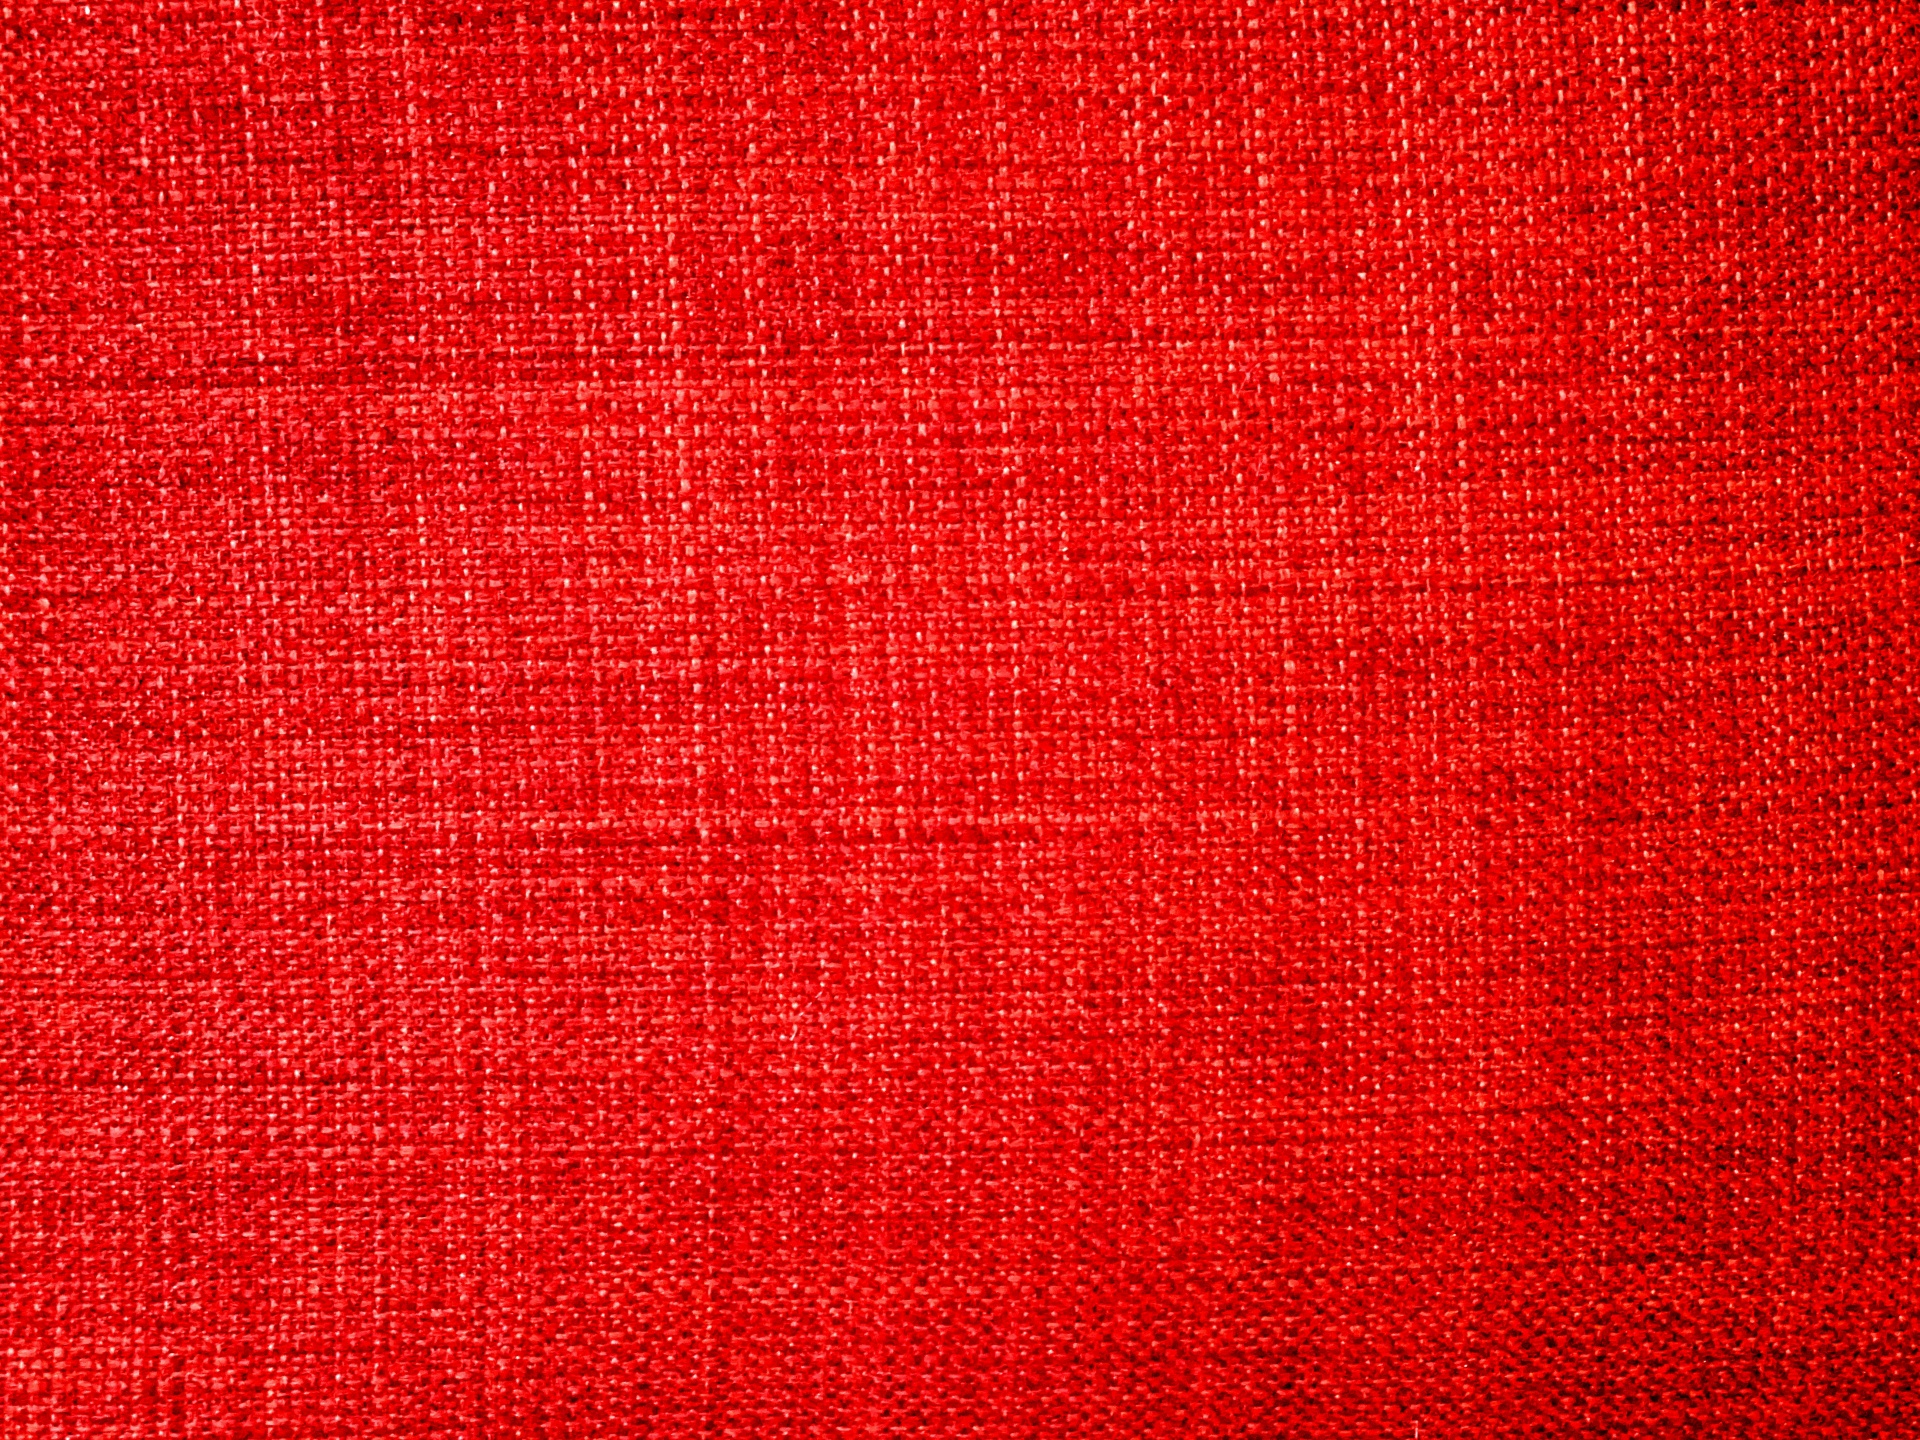 Fondo rojo de la tela con textura